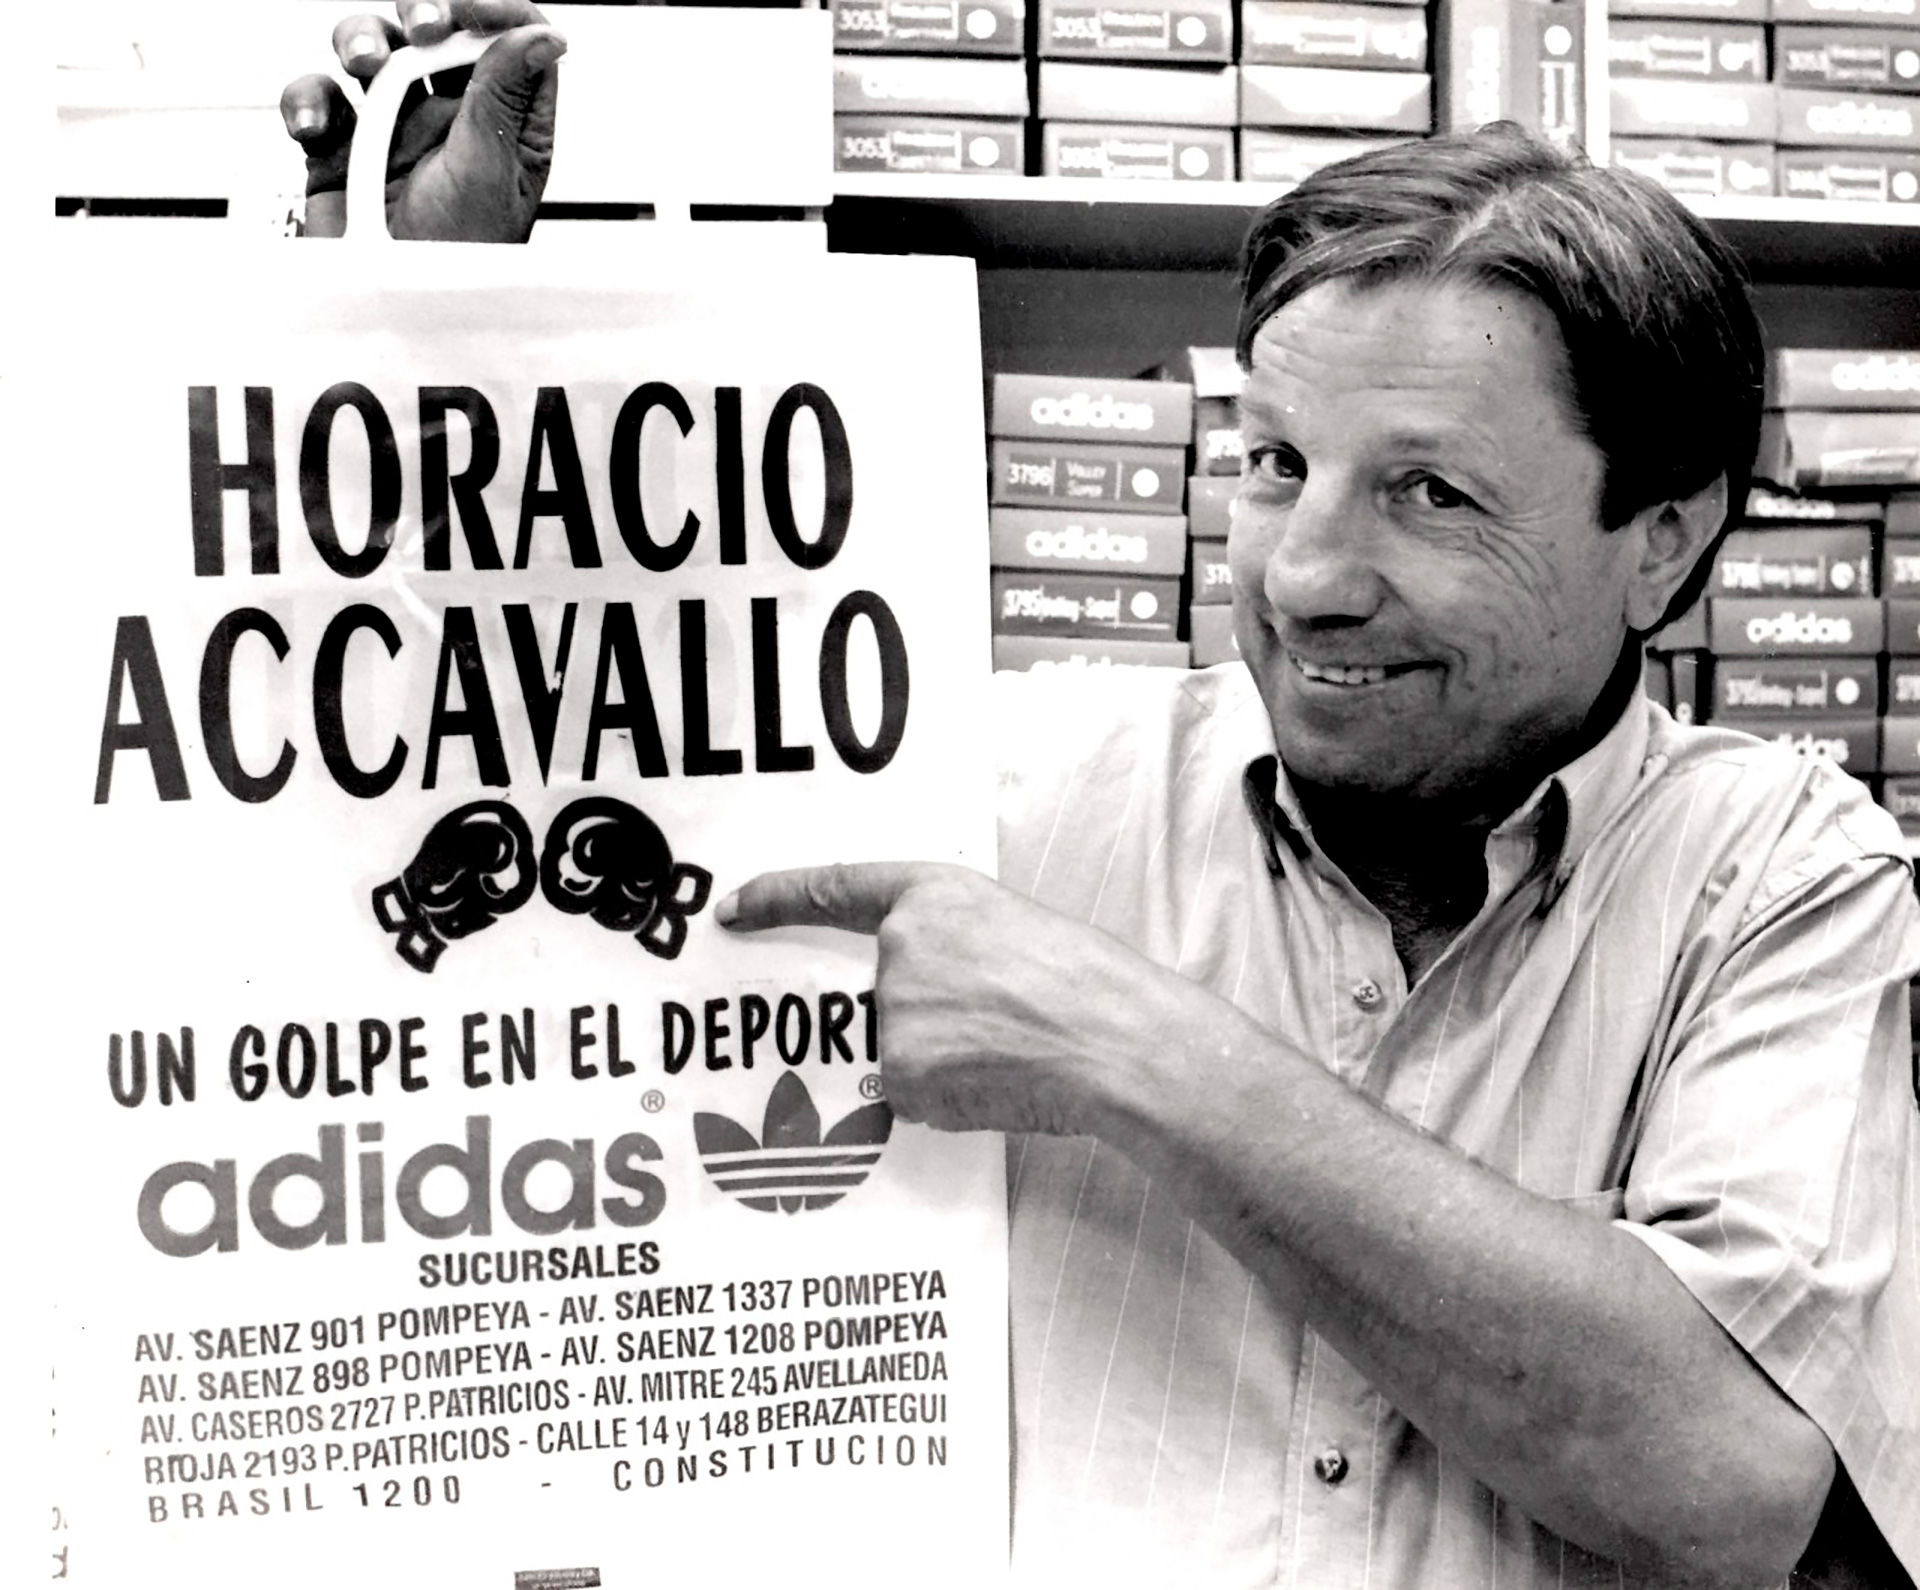 Después de retirarse del boxeo, Horacio puso varias tiendas deportivas con su nomobre (Gentileza familia Accavallo)